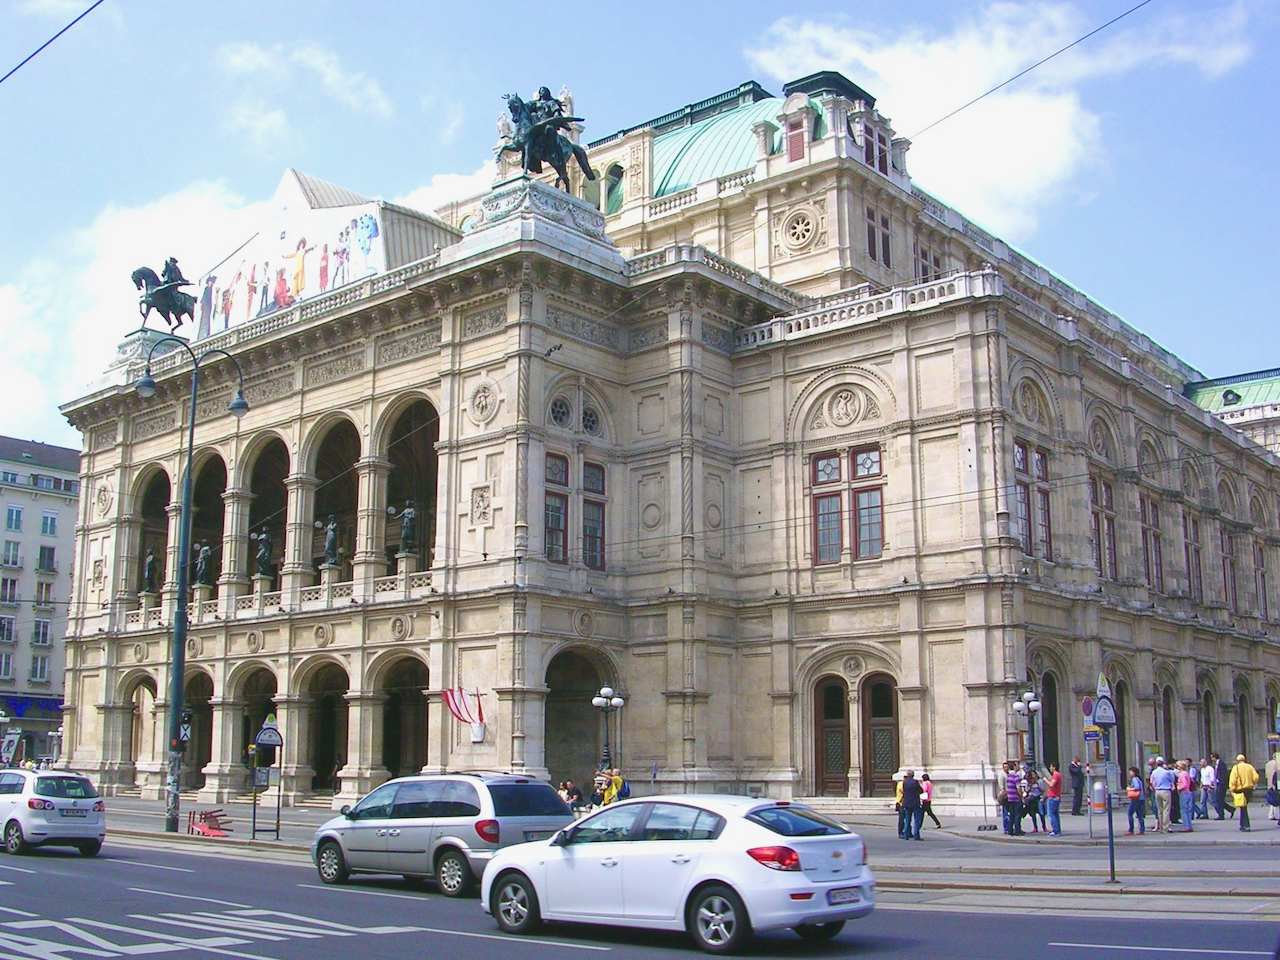  ■维也纳国立歌剧院，新文艺复兴风格的代表建筑。